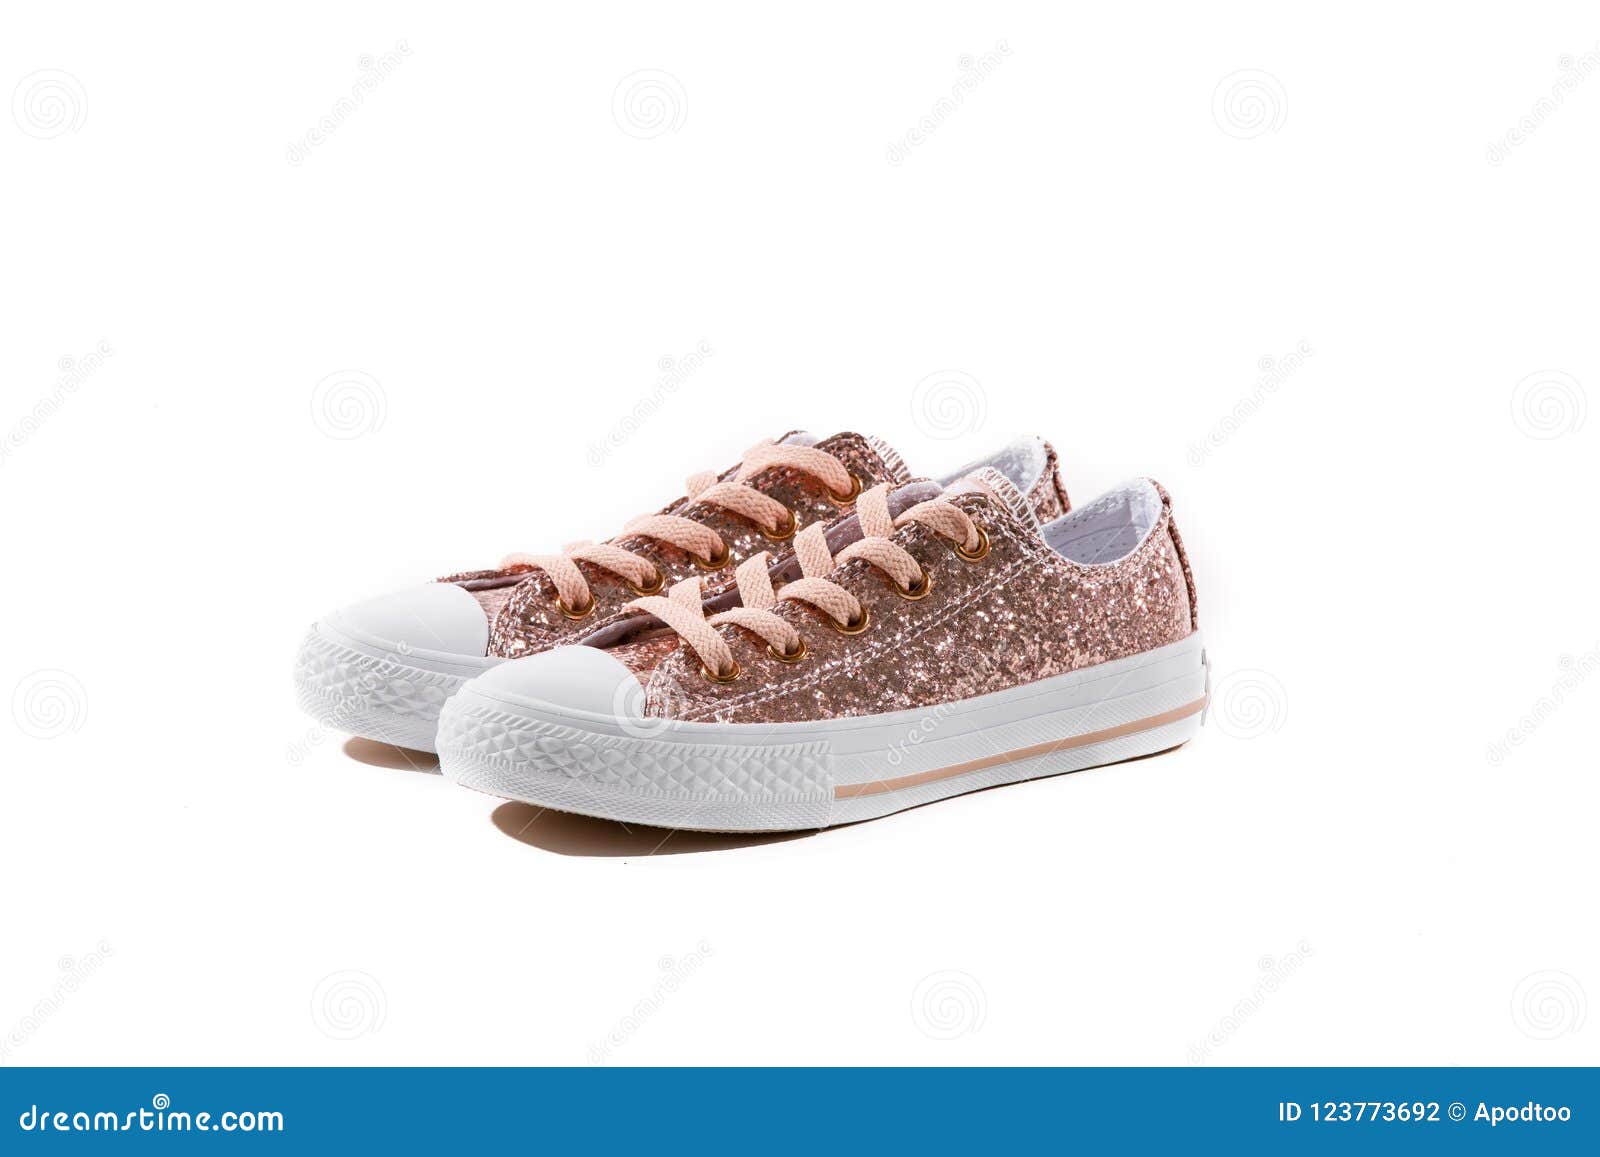 glitter white tennis shoes